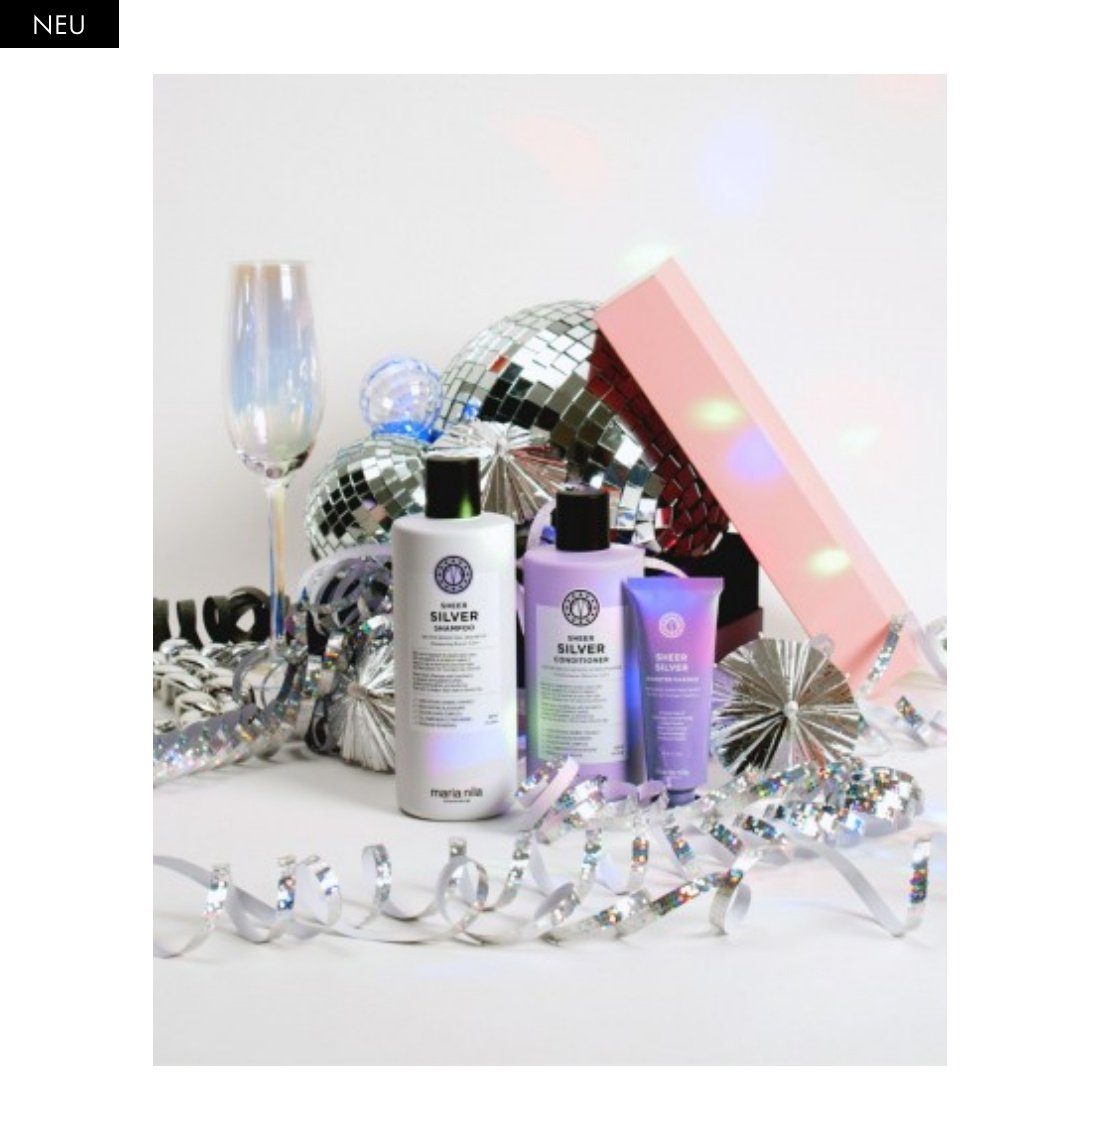 Silver Maria Geschenkset, Gelbstiche, HOLIDAY + Sheer Maske, Glanz Booster Conditioner+ BOX 3-tlg., neutralisiert Shampoo NEU, Haarpflege-Set Nila